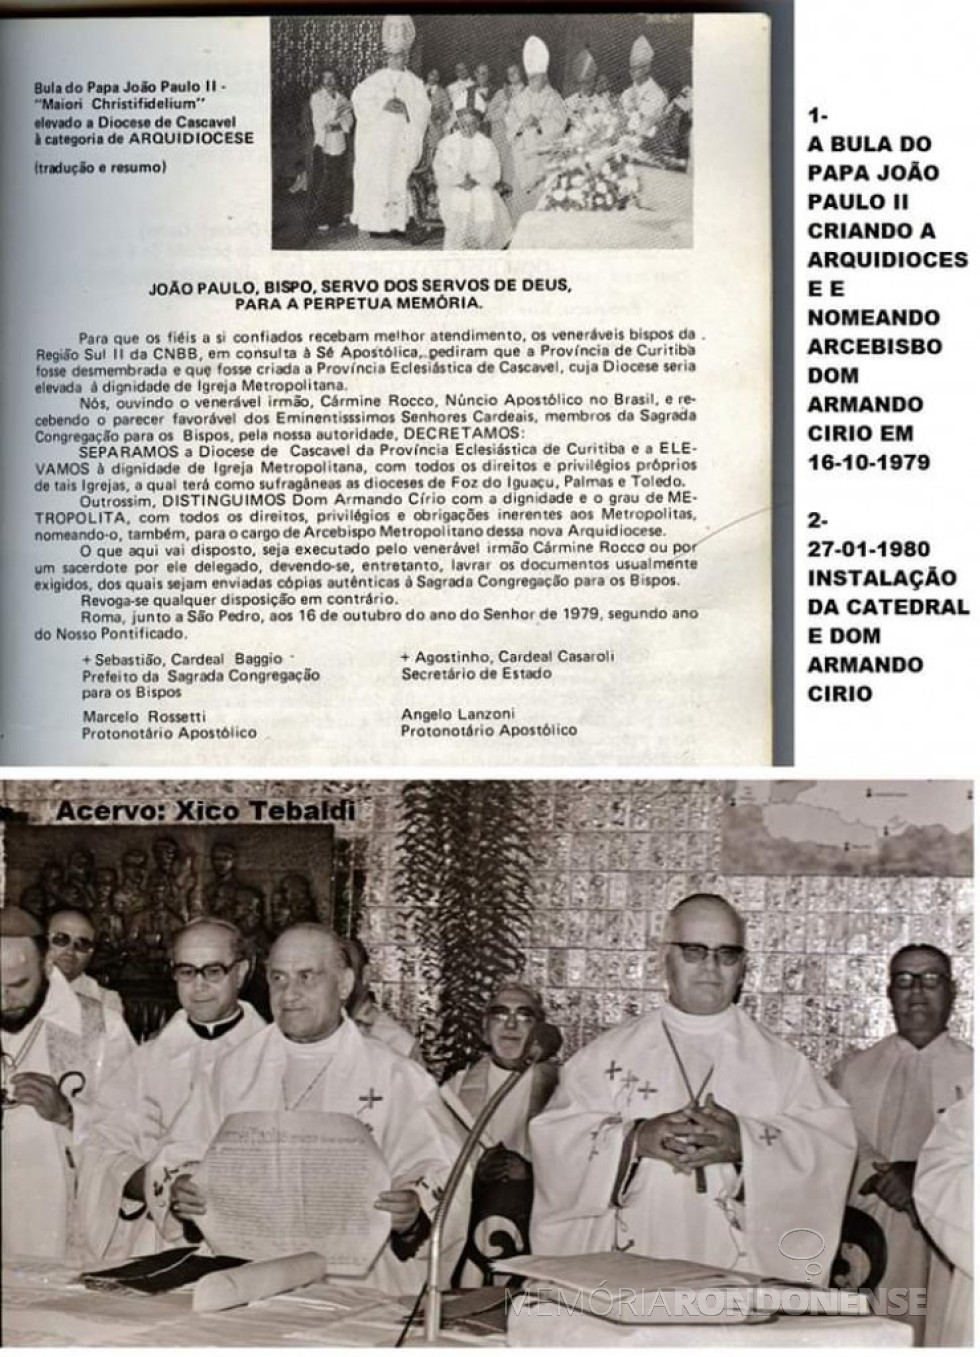 || Detalhes da nomeação e posse de D. Armando Cirio como 1º arcebispo metropolitano de Cascavel. 
Imagem: Acervo Pietro ( Pietro (Xico )Tebaldi - FOTO 21 - 